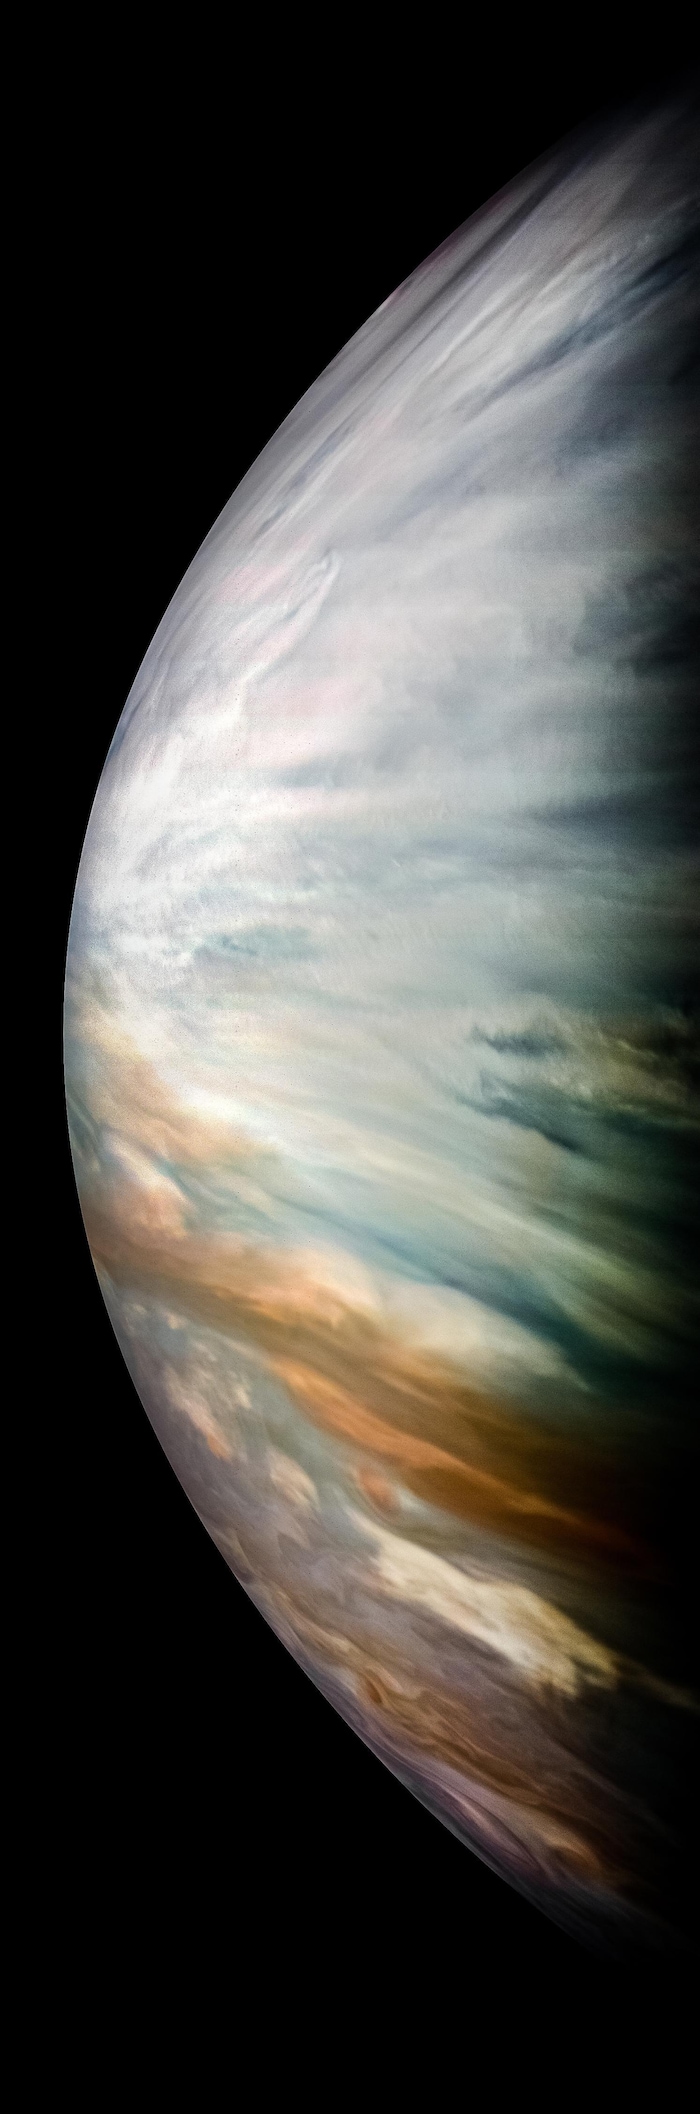 D'épais nuages blancs sont présents sur cette image captée par Juno de la zone équatoriale de Jupiter.